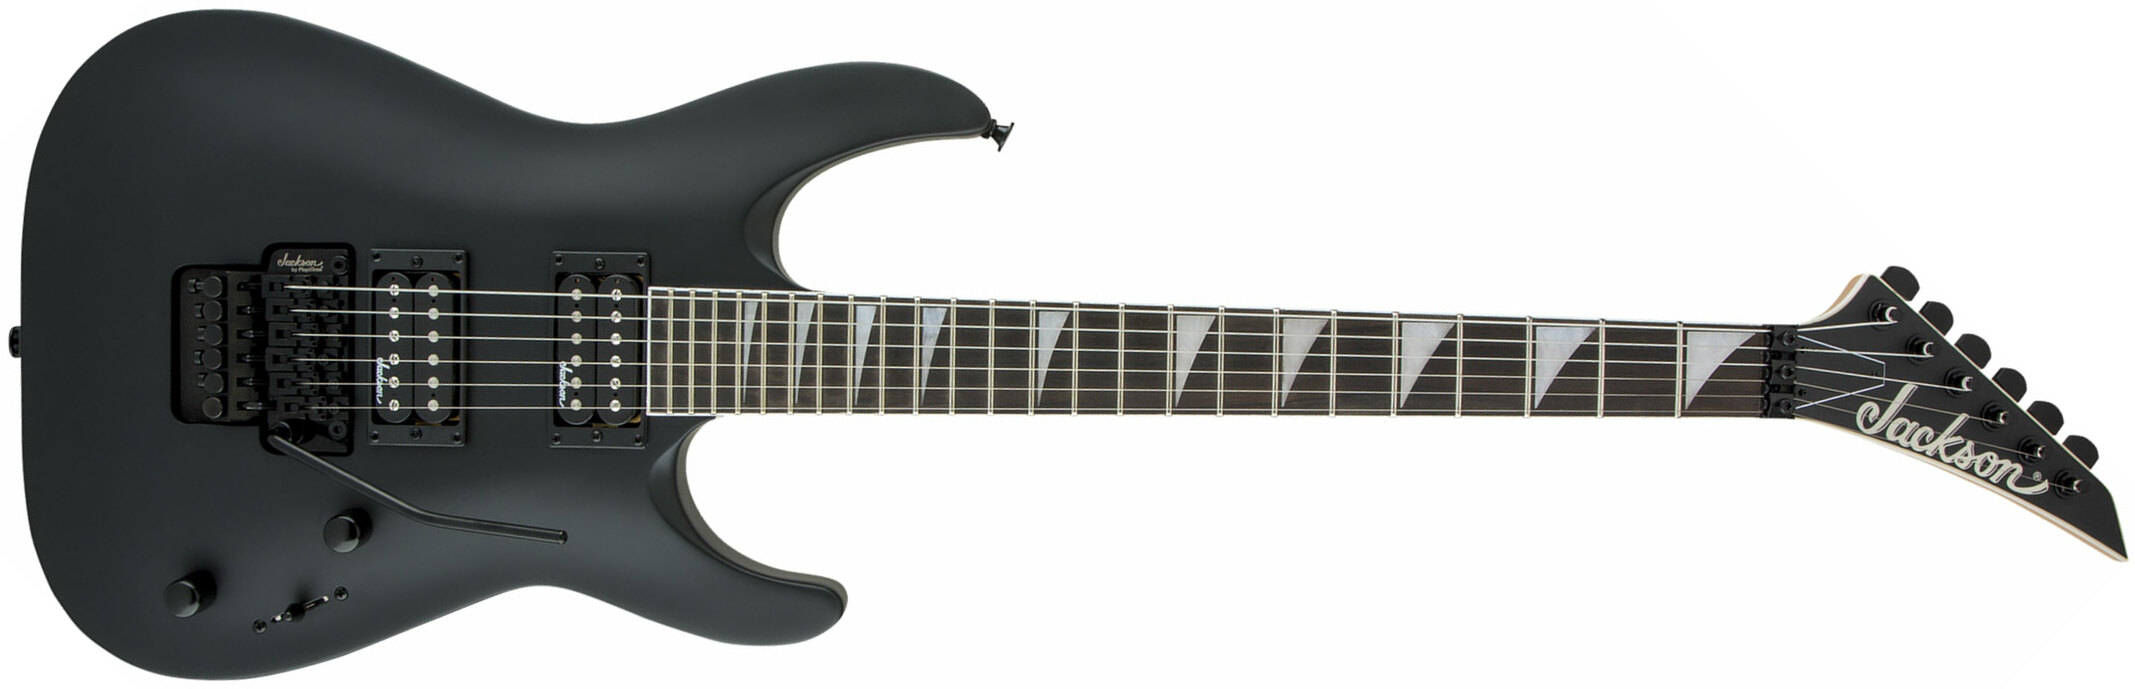 Jackson Dinky Archtop Js32 Dka 2h Fr Ama - Black Satin - Guitarra eléctrica de doble corte. - Main picture